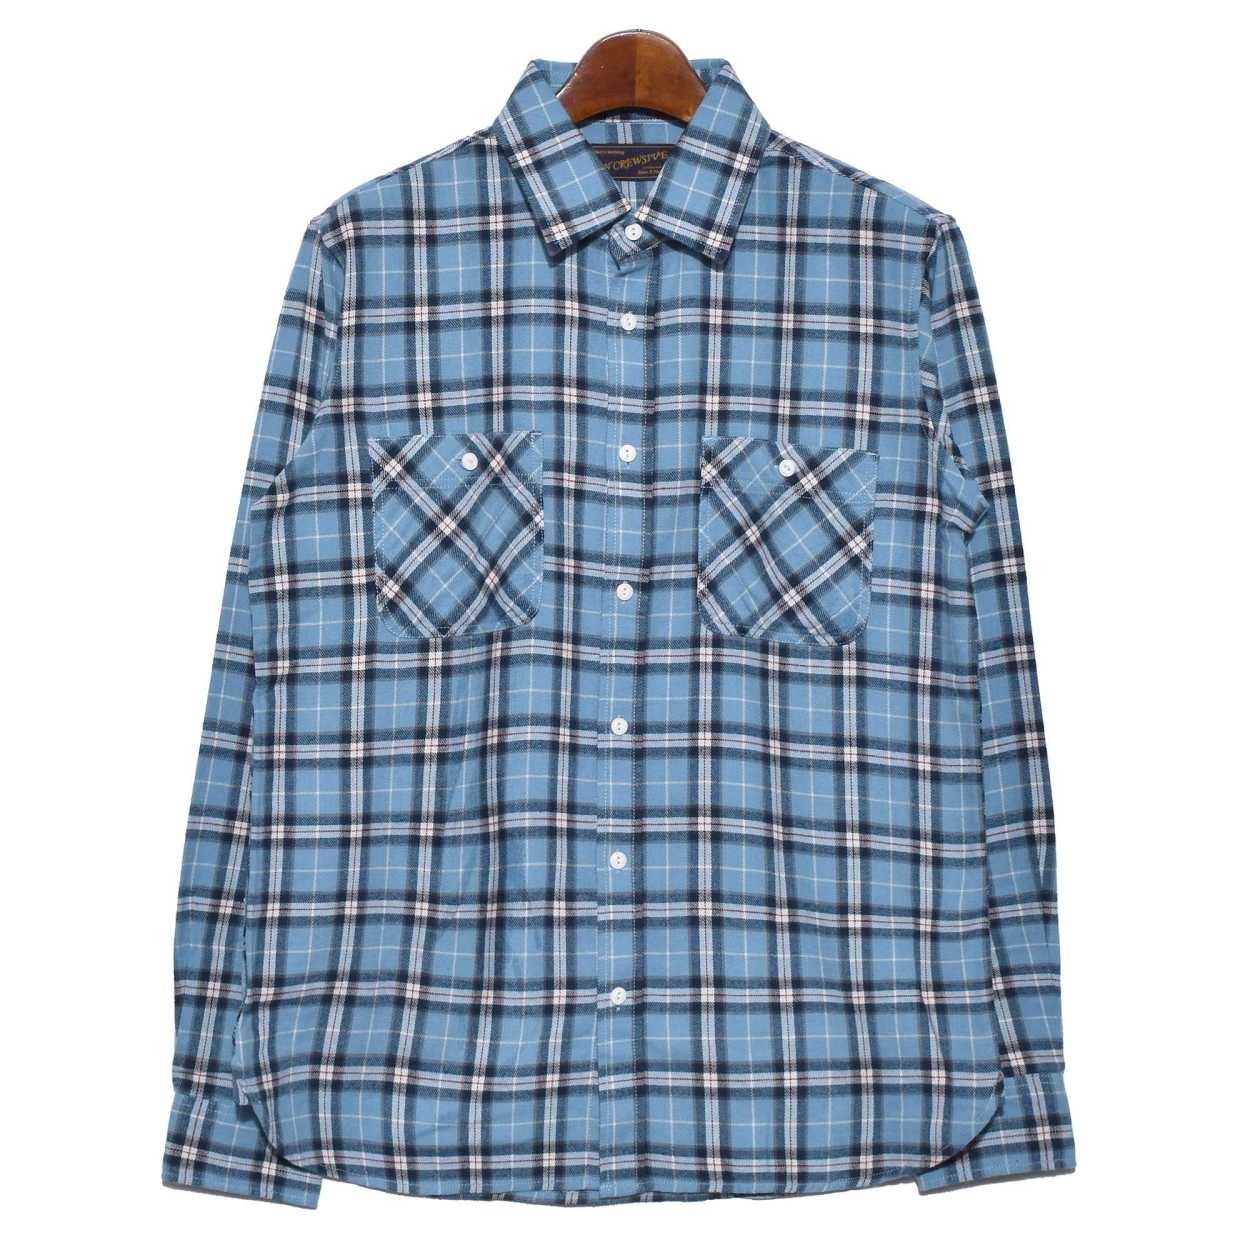 送料無料 ネルシャツ メンズ フランネルシャツ 大きいサイズ 厚手 アメカジ 長袖シャツ チェック柄 インクルーシブ 春コーデ